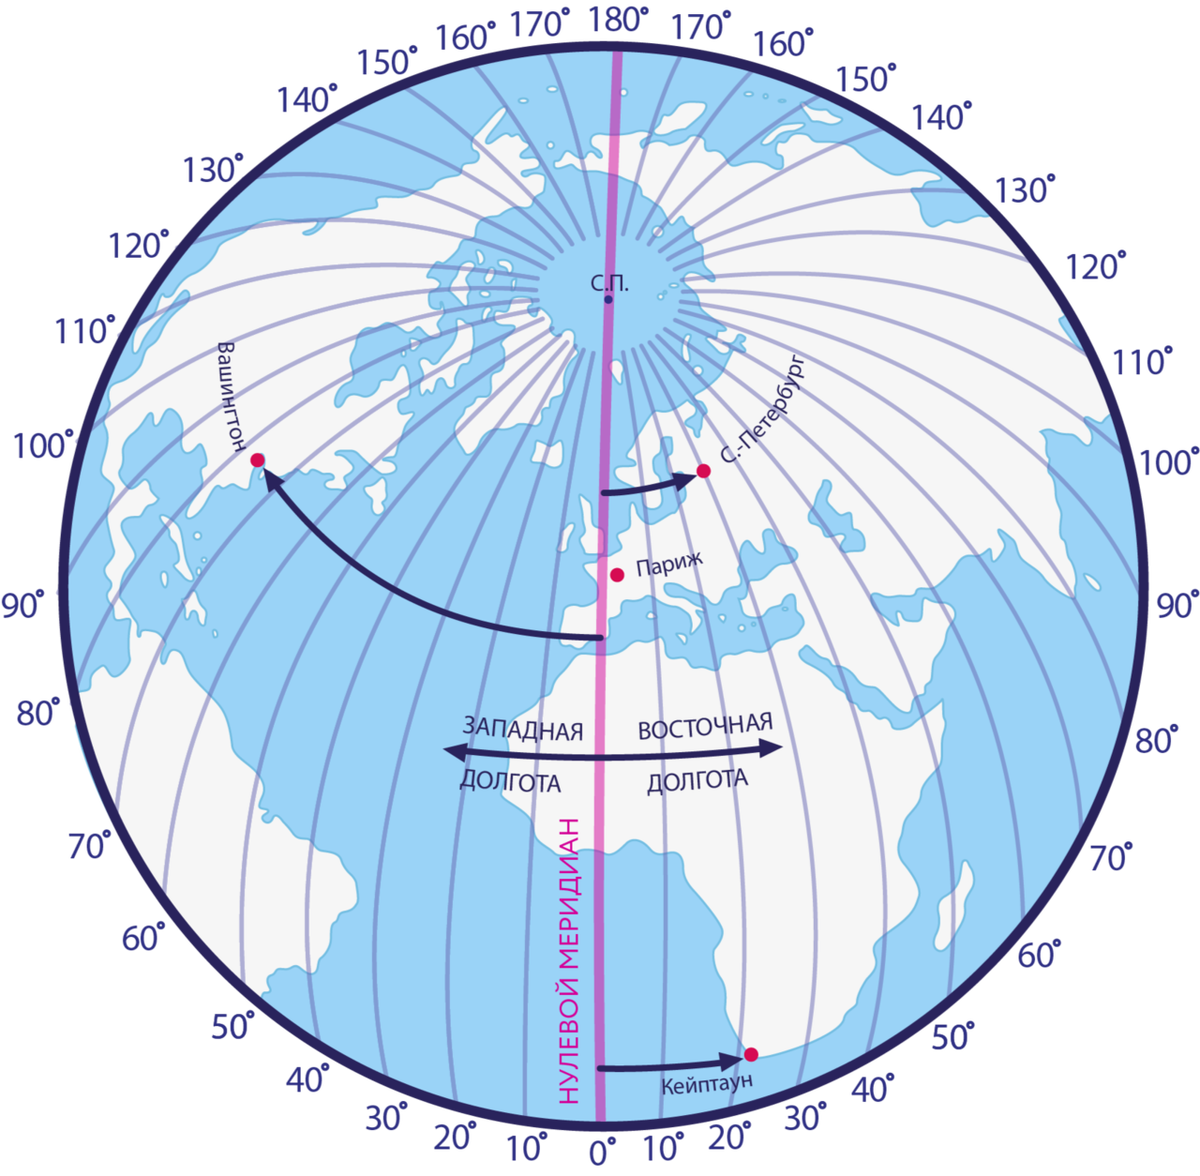 Экватор Гринвичский Меридиан Меридиан 180 градусов. Нулевой Меридиан и 180 Меридиан. Нулевой Меридиан на карте. Нулевой и 180 Меридиан на карте. Африка по отношению 0 и 180 долготы